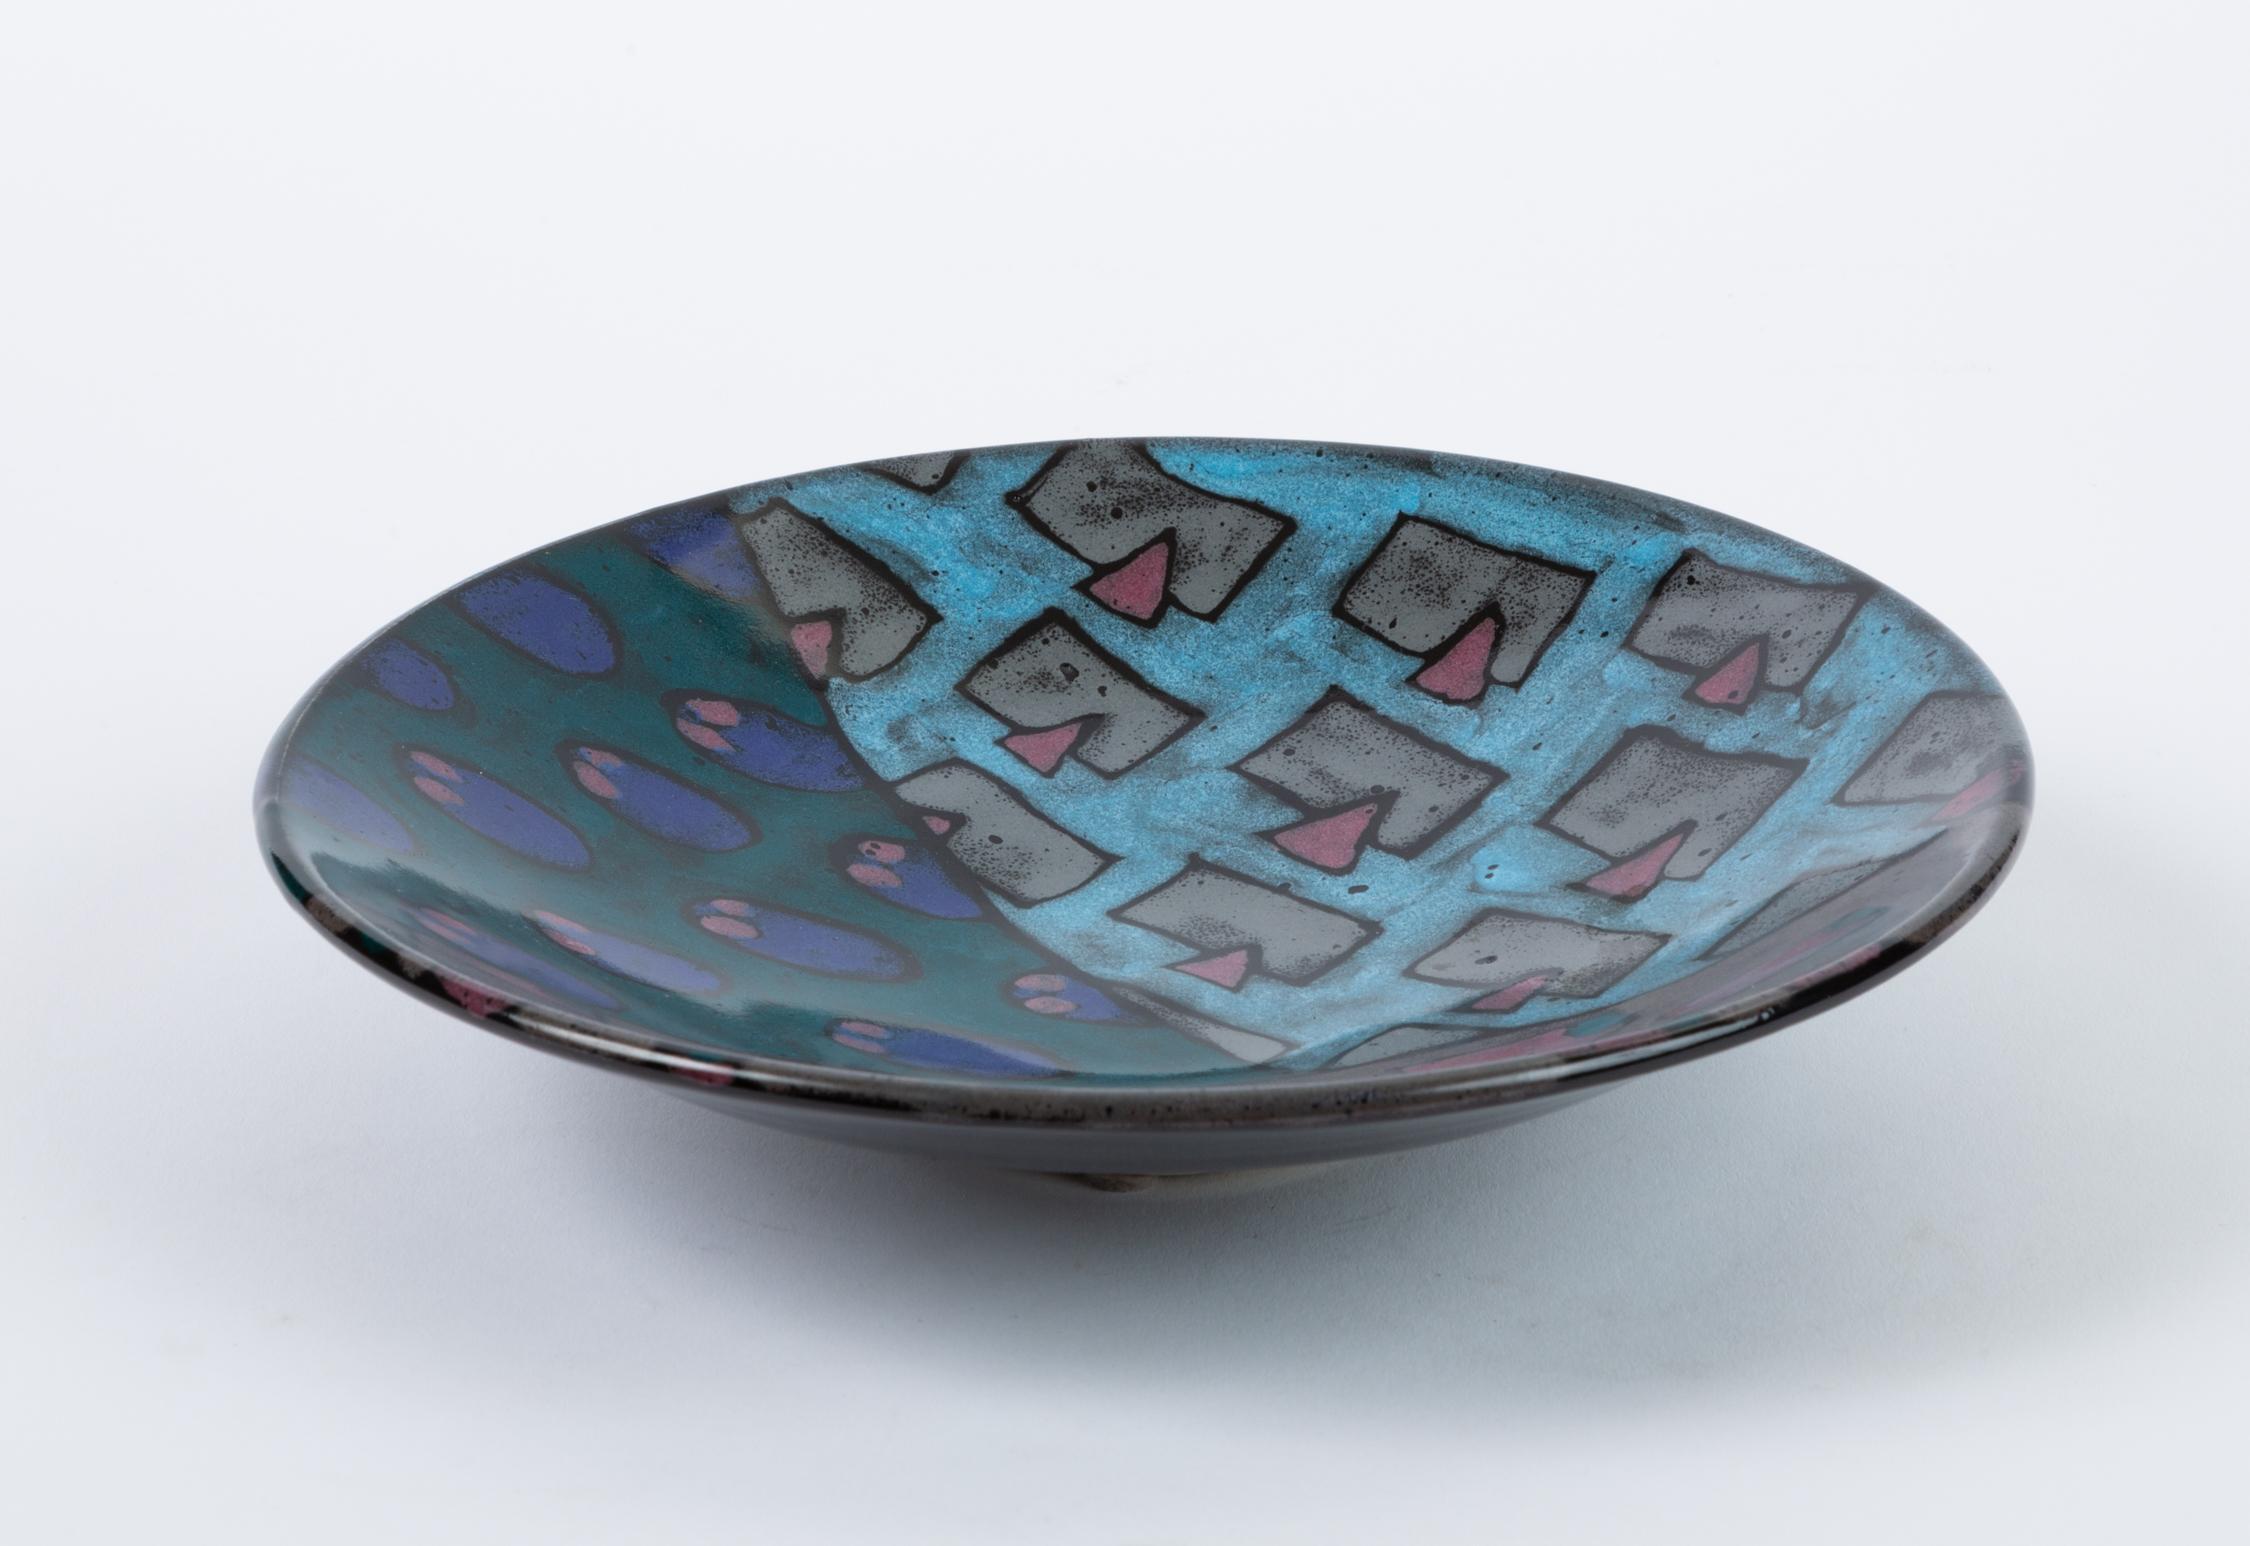 Glazed 1980s Studio Pottery Bowl with Geometric Motif